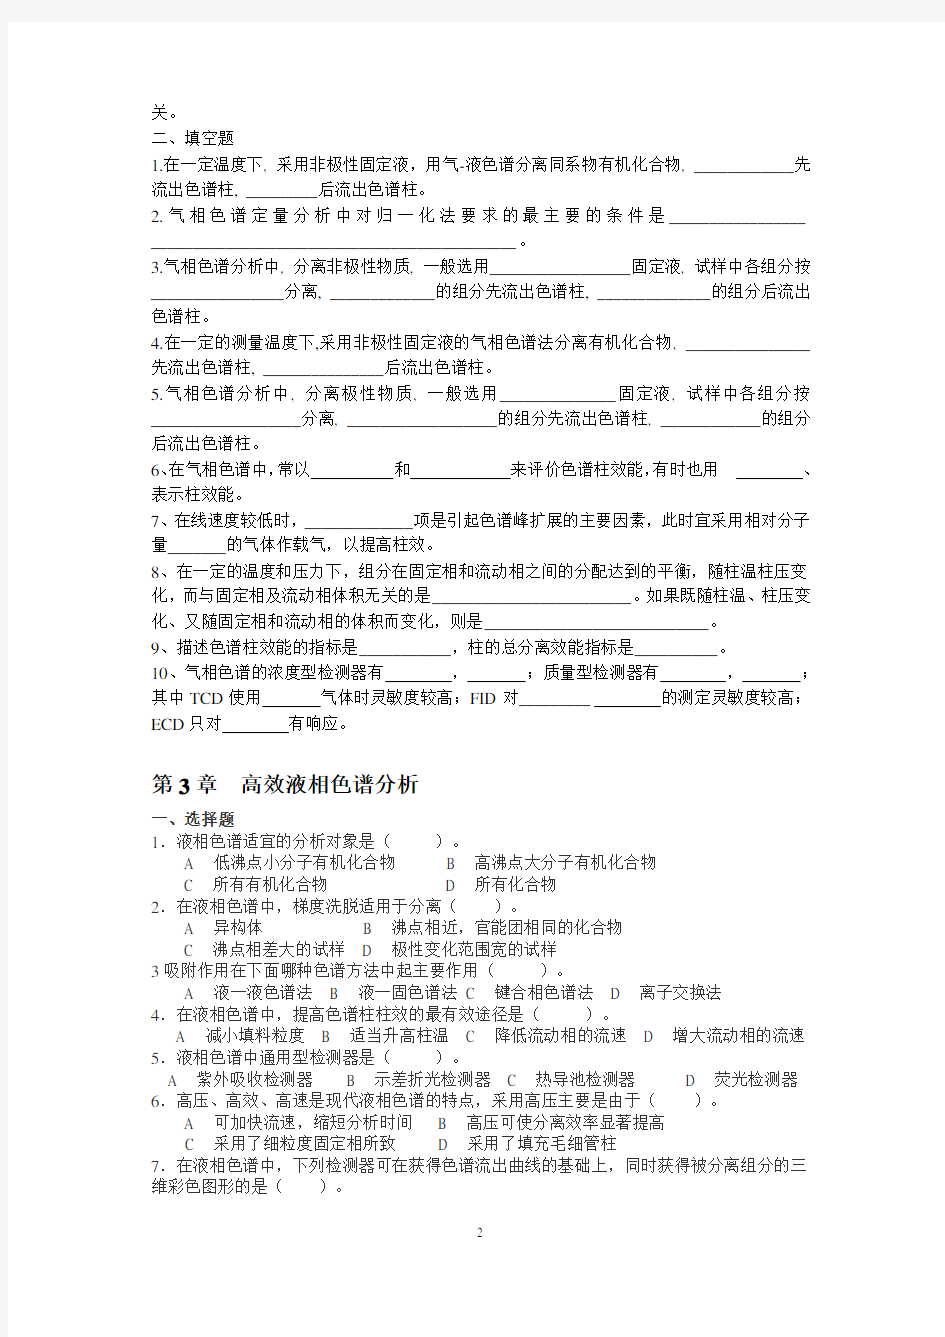 《南京工业大学《仪器分析》期末考试试卷 (2)